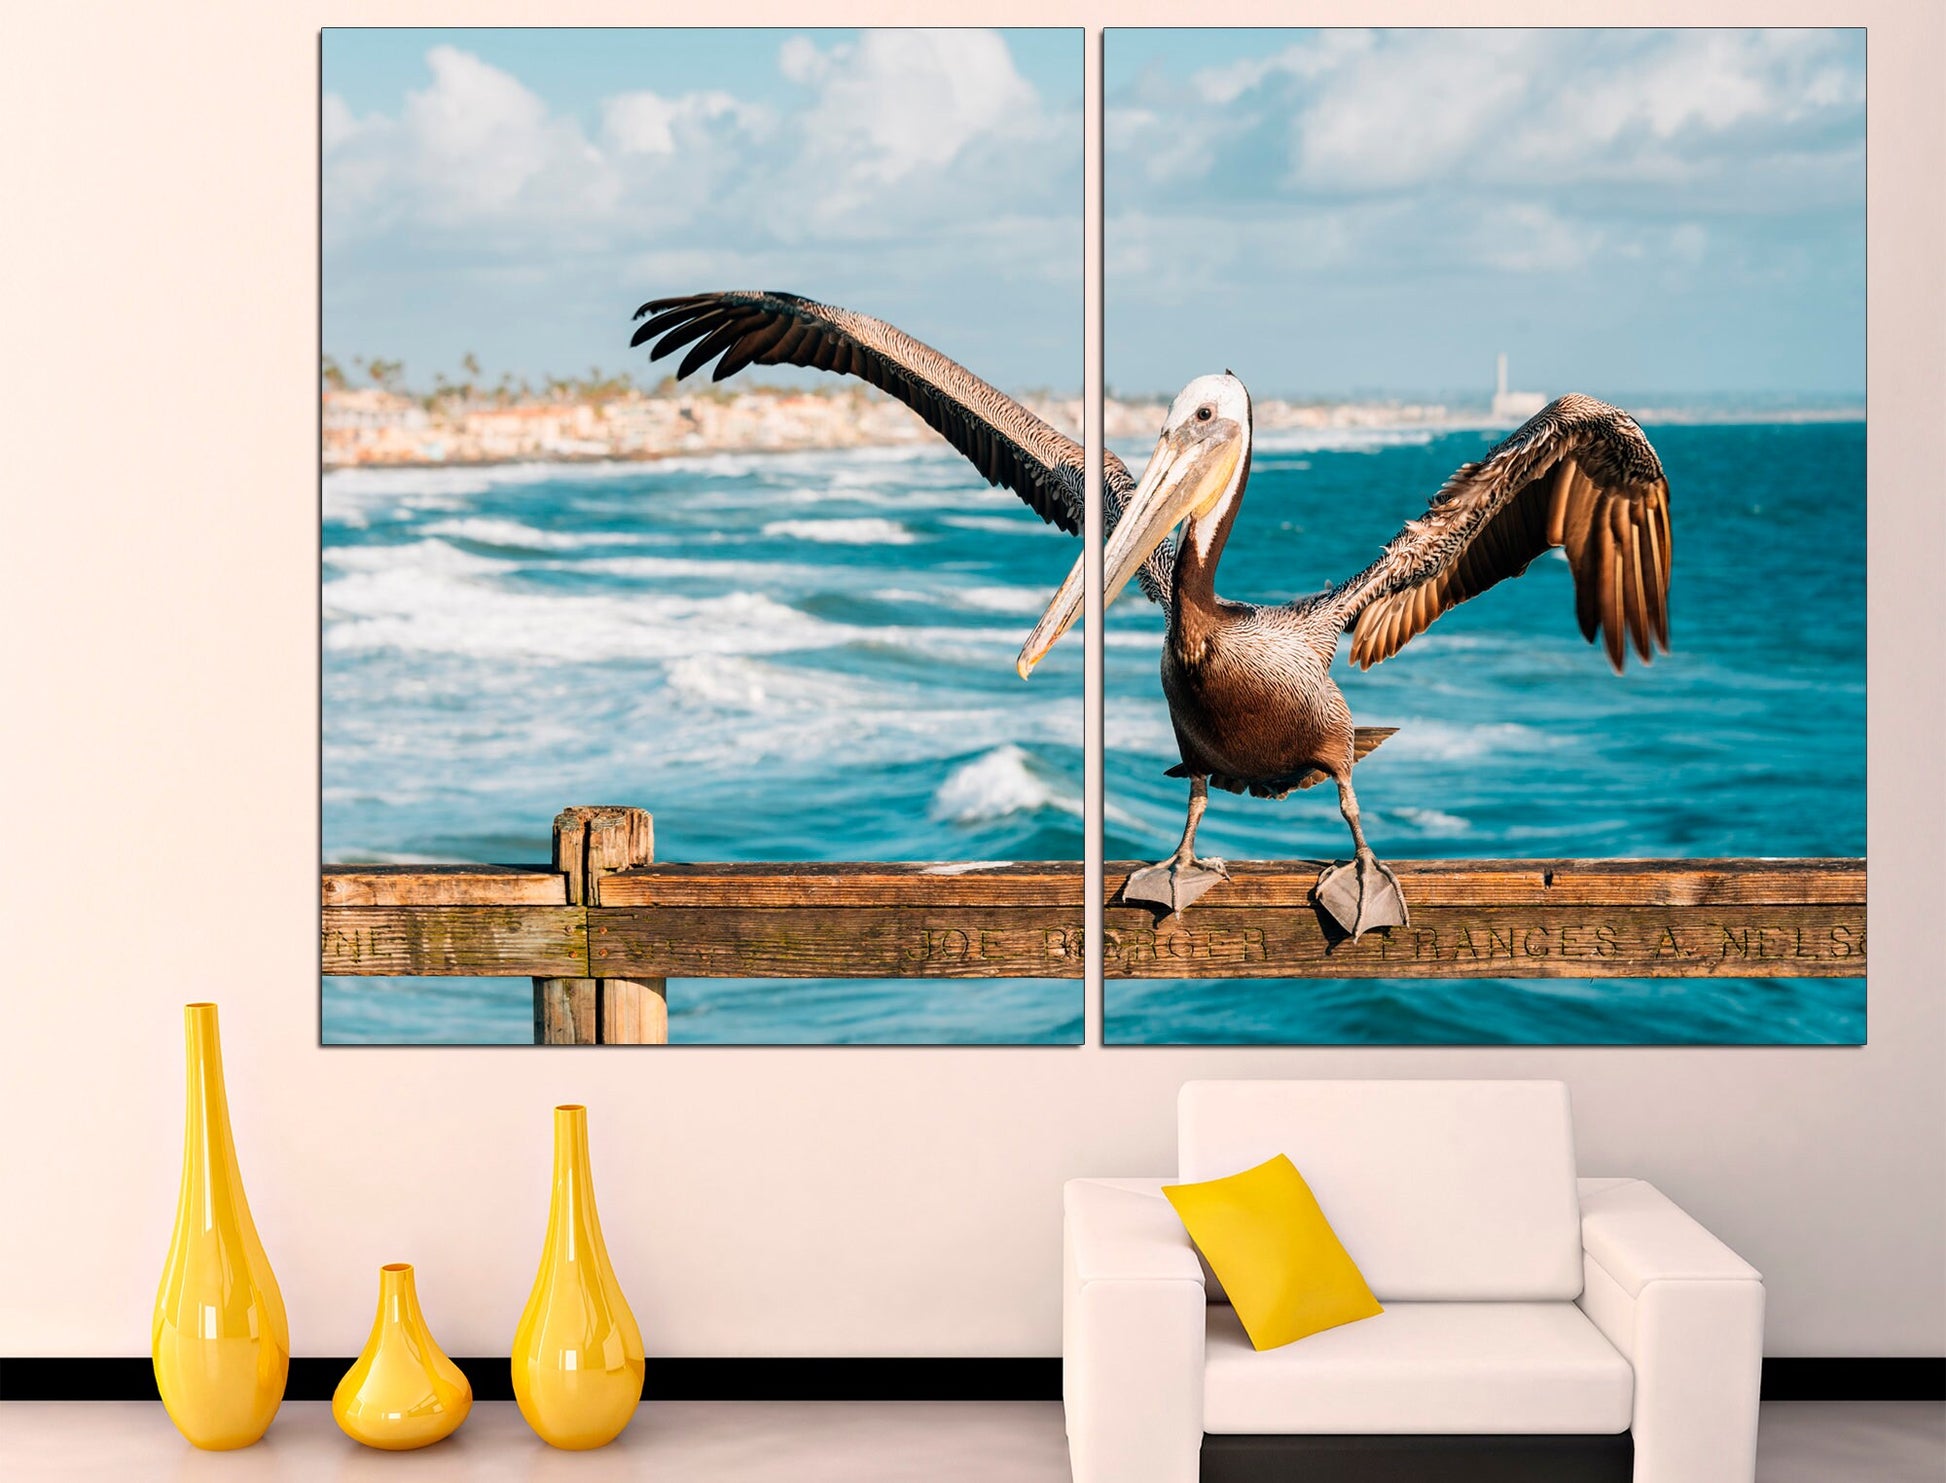 Pelican wall art Bird wall decor Coastal wall art, Pelican art Beach wall decor Home decor wall art